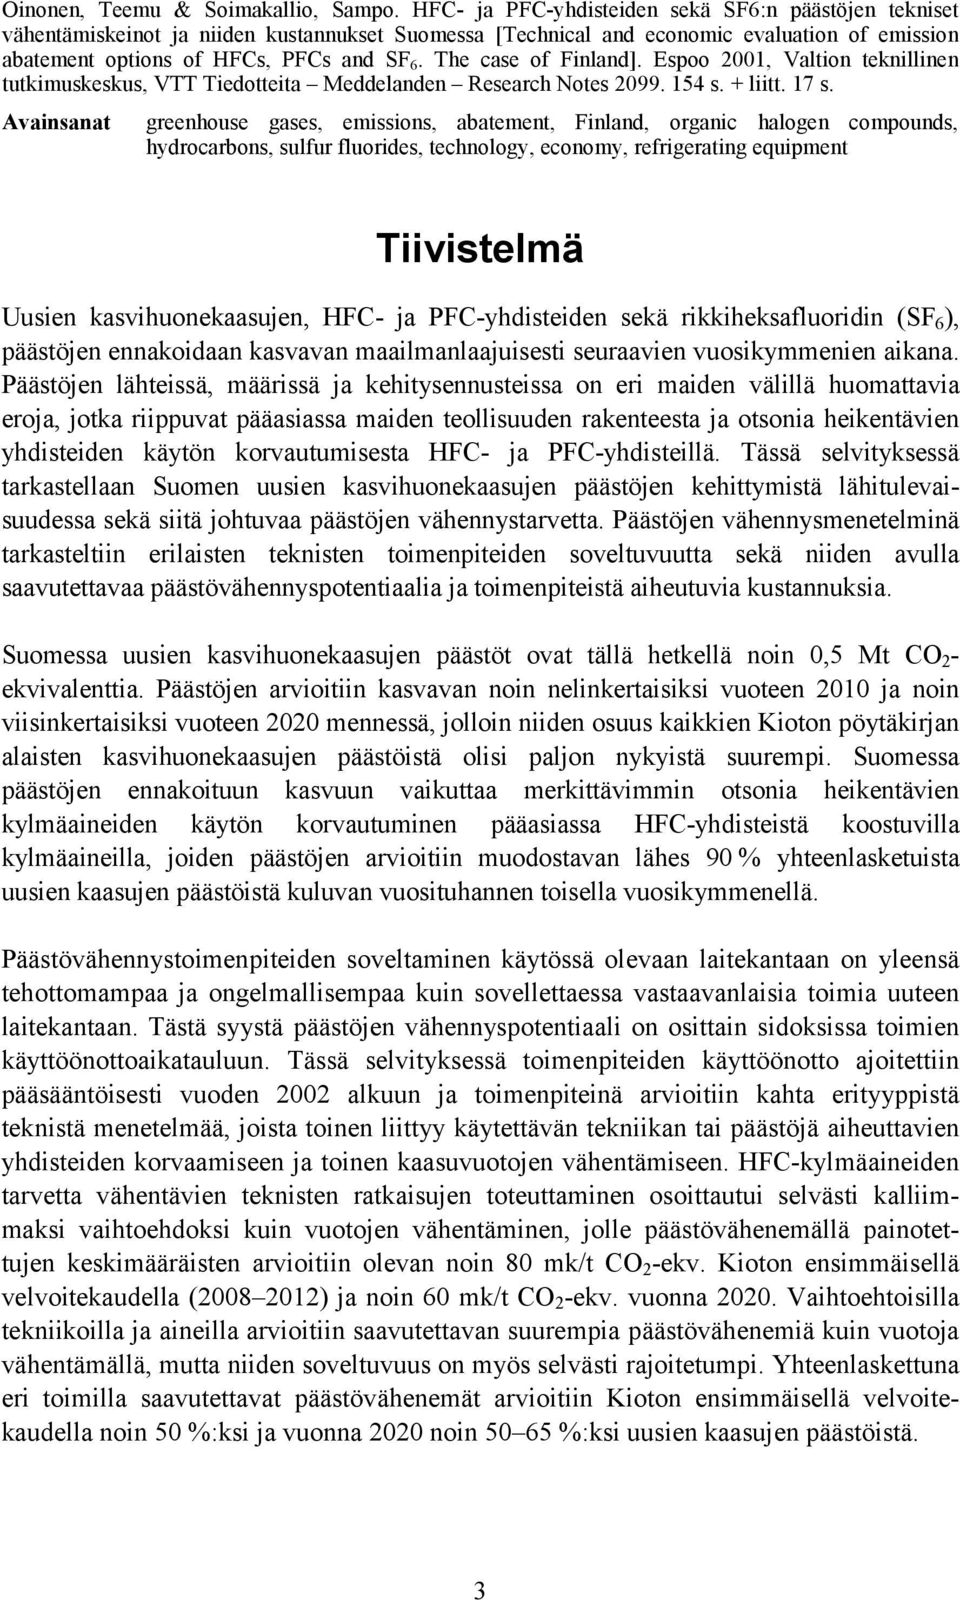 The case of Finland]. Espoo 2001, Valtion teknillinen tutkimuskeskus, VTT Tiedotteita Meddelanden Research Notes 2099. 154 s. + liitt. 17 s.